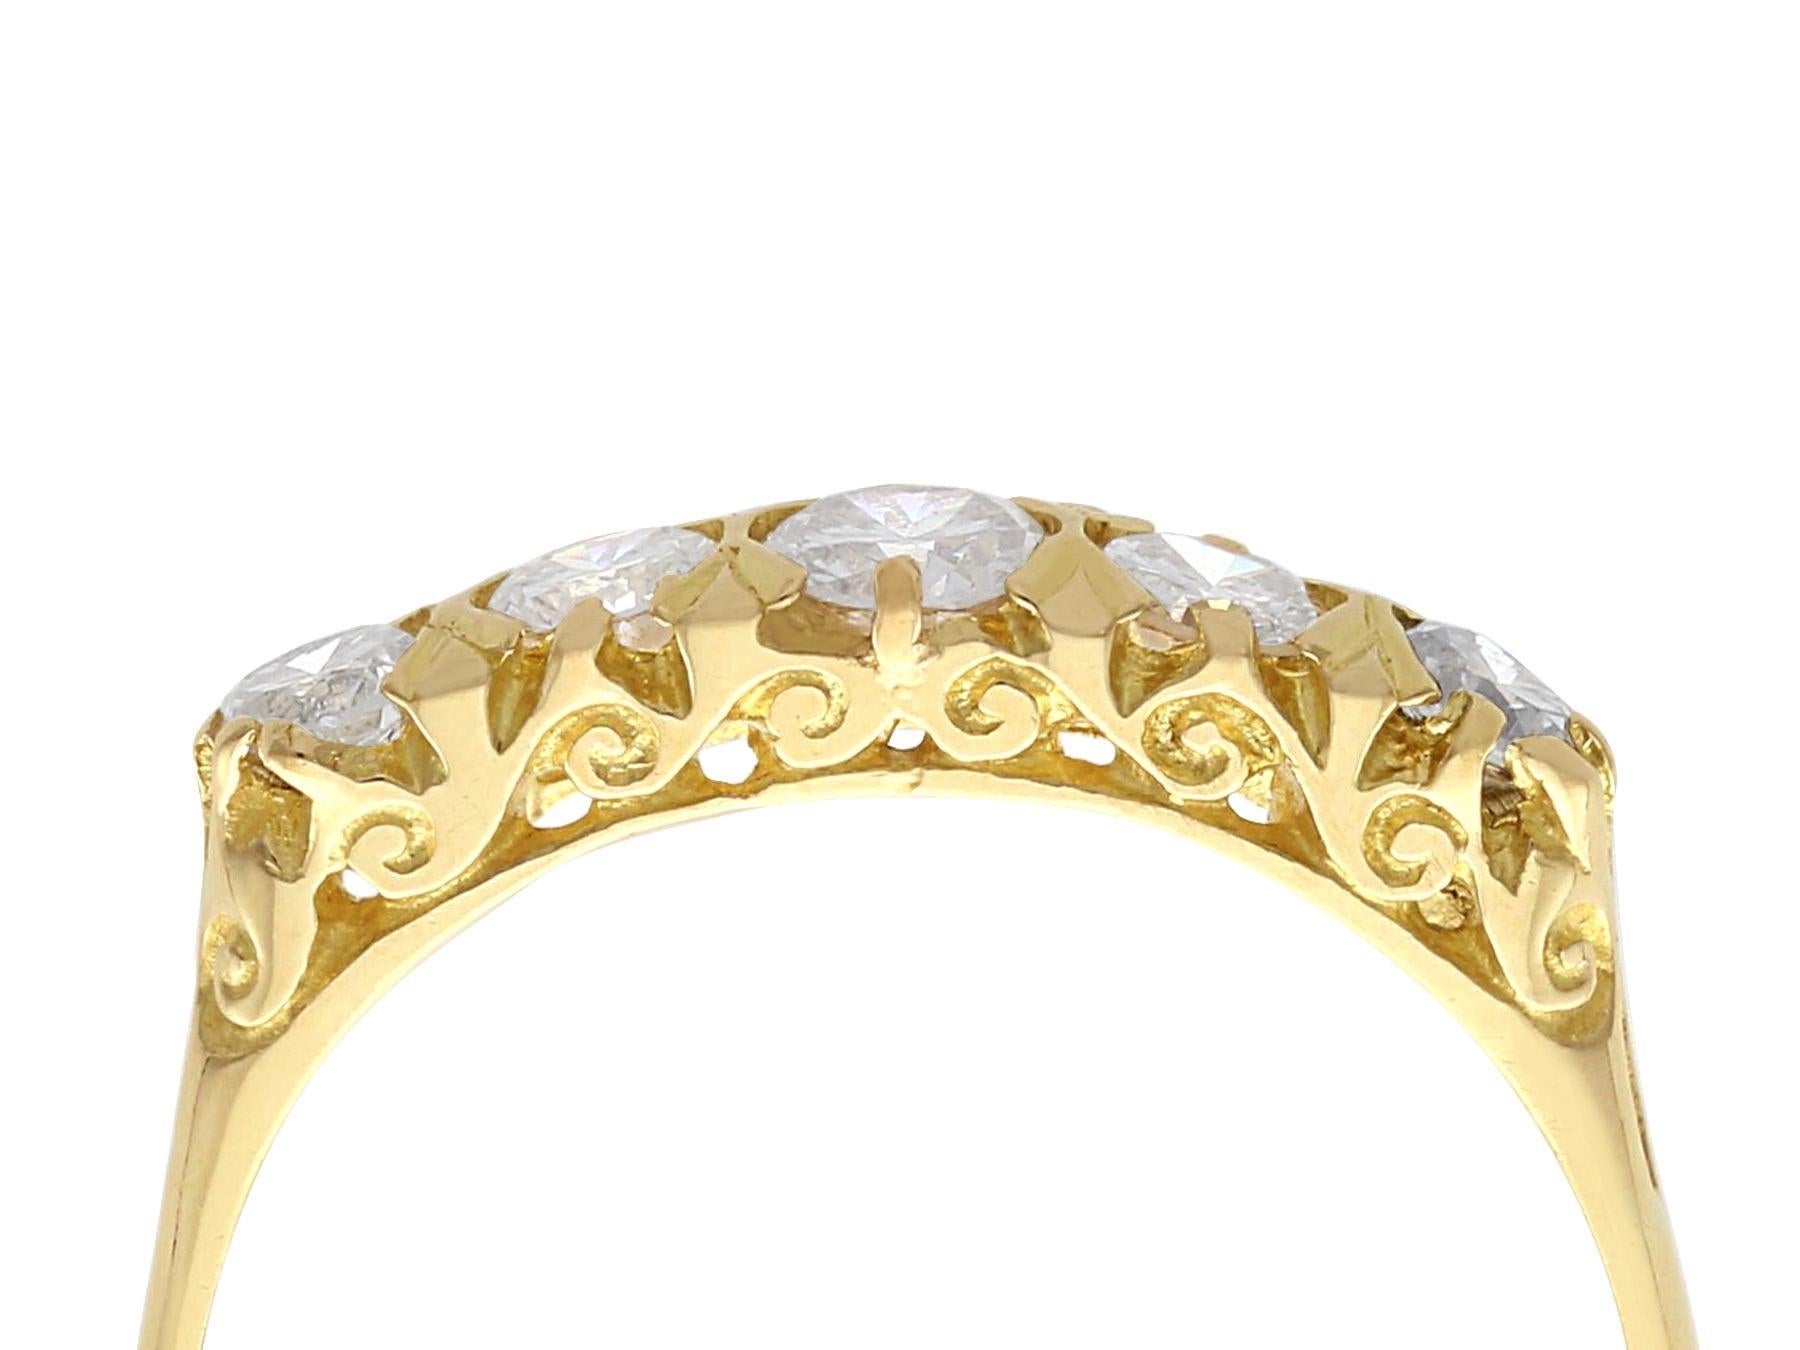 Eine feine und beeindruckende antike 0,84 Karat Diamant und 18 Karat Gelbgold fünf Stein-Ring; Teil unserer Vintage-Schmuck und Nachlass-Schmuck Sammlungen.

Dieser beeindruckende Vintage-Diamantring mit fünf Steinen ist aus 18 Karat Gelbgold